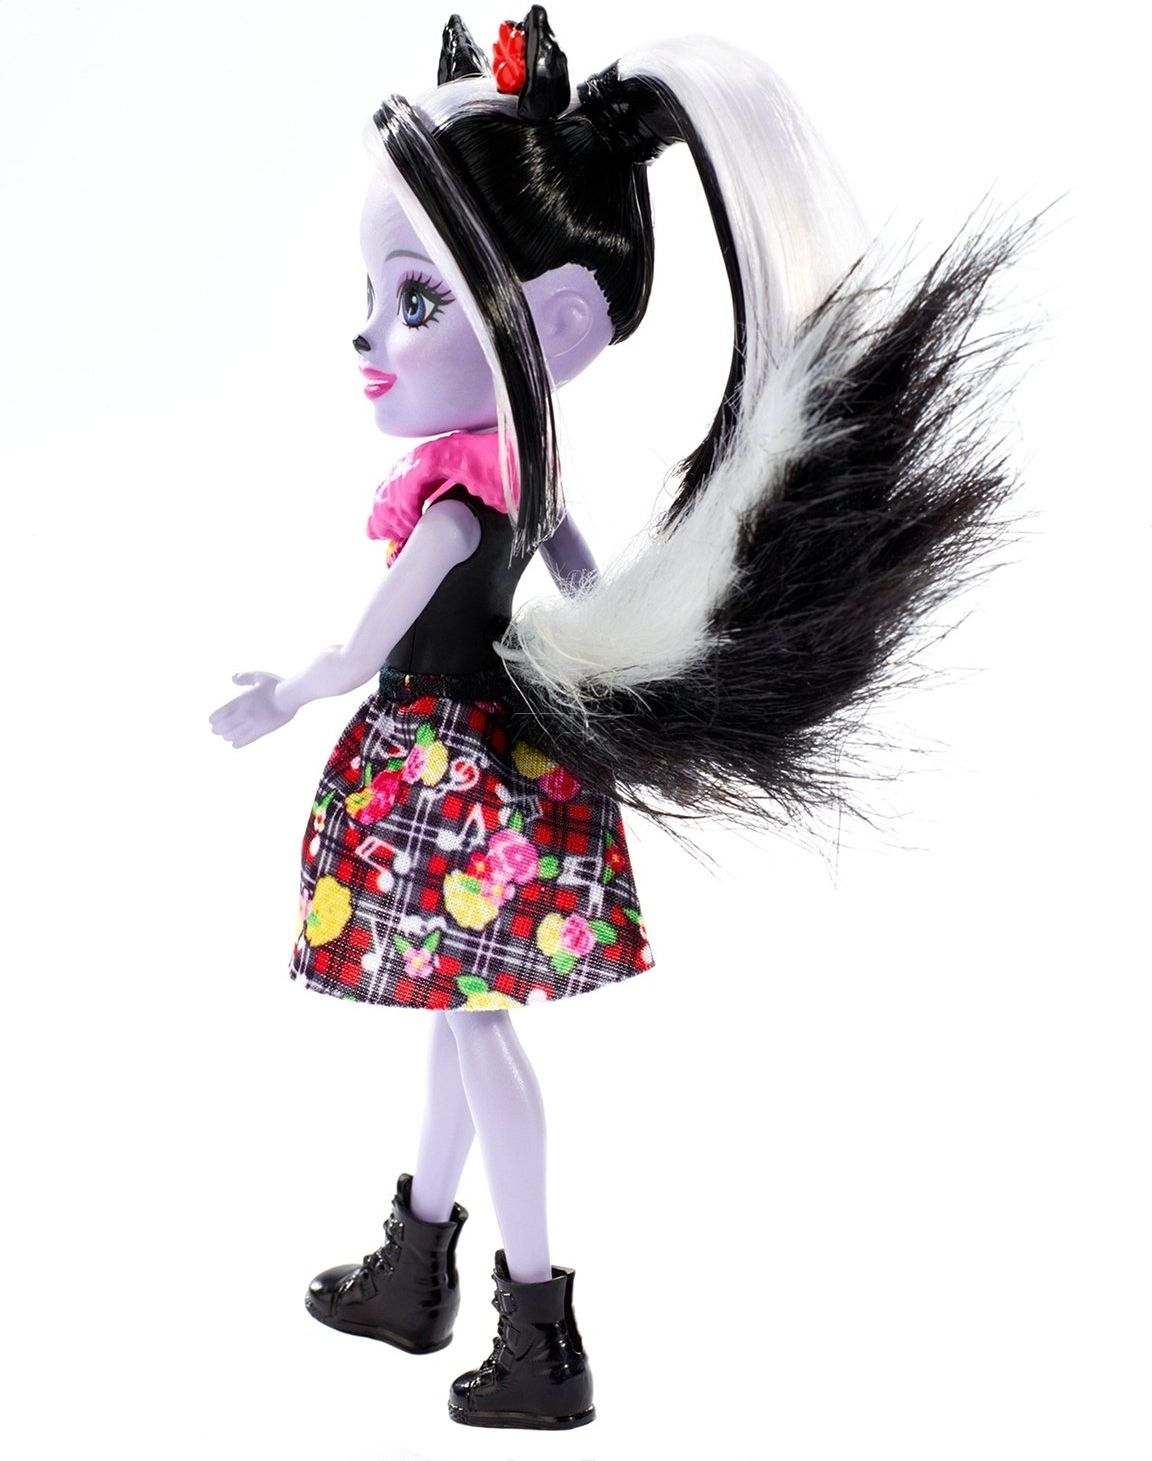 Кукла Скунси Седж с питомцем скунсом Кейпер 15см Enchantimals Mattel FXM72